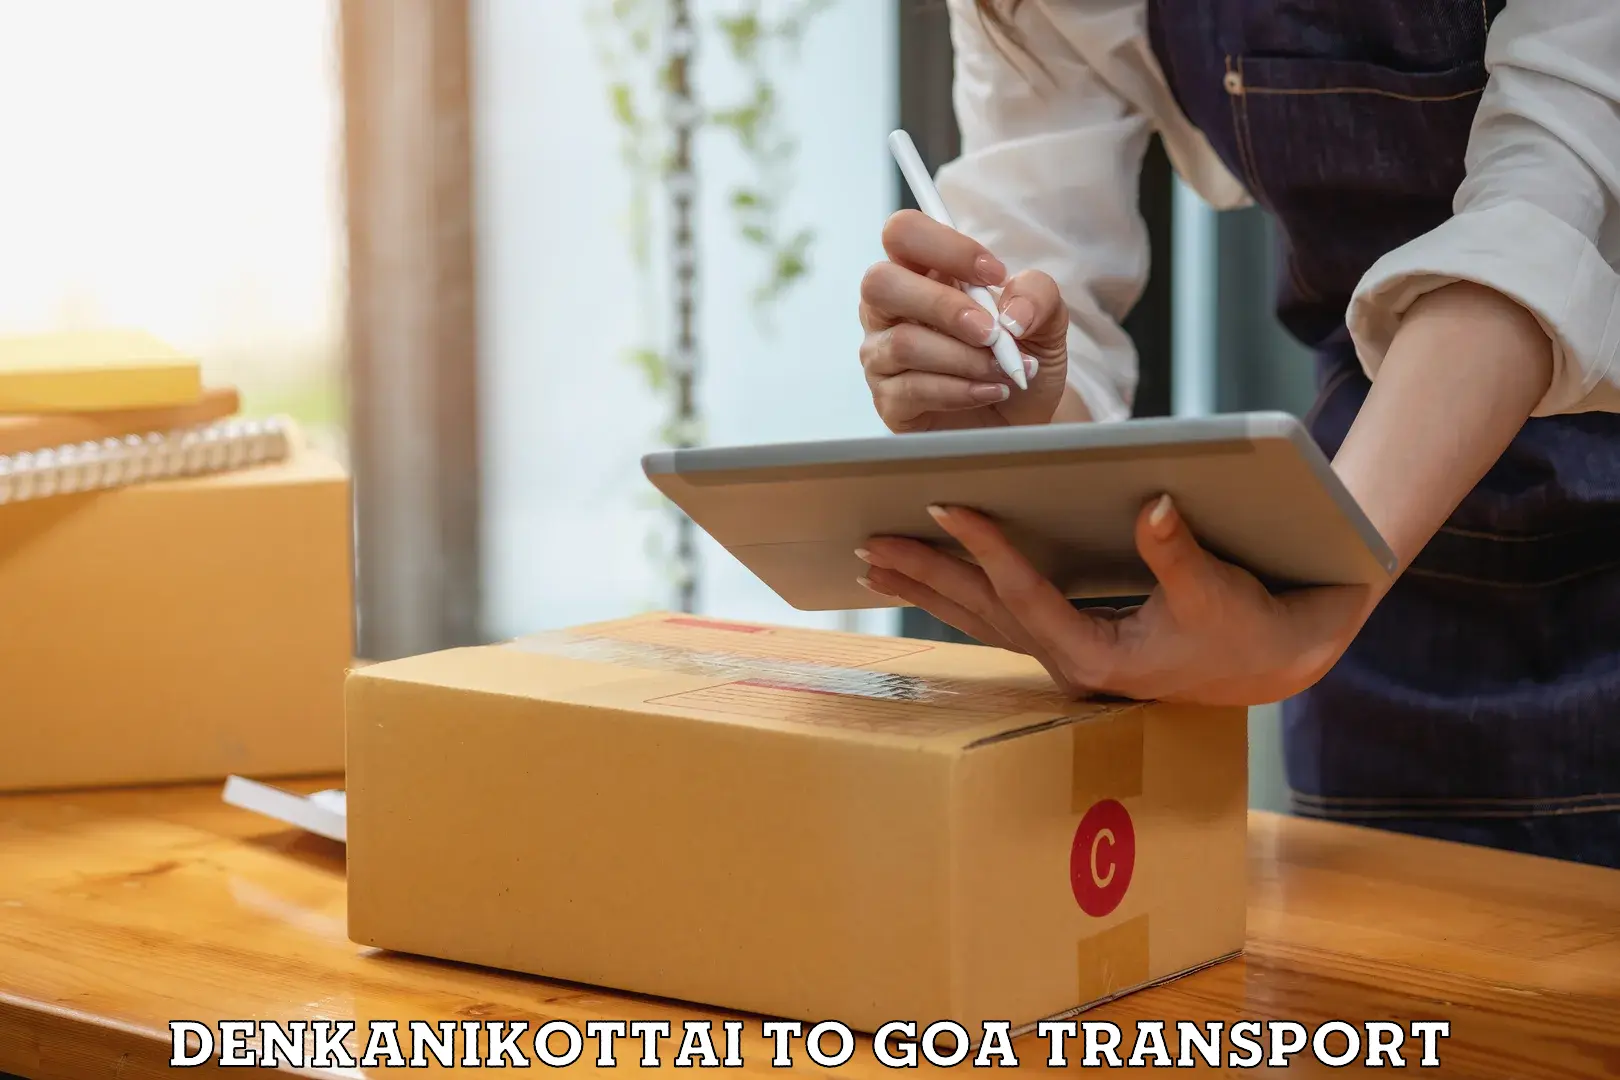 Furniture transport service Denkanikottai to South Goa